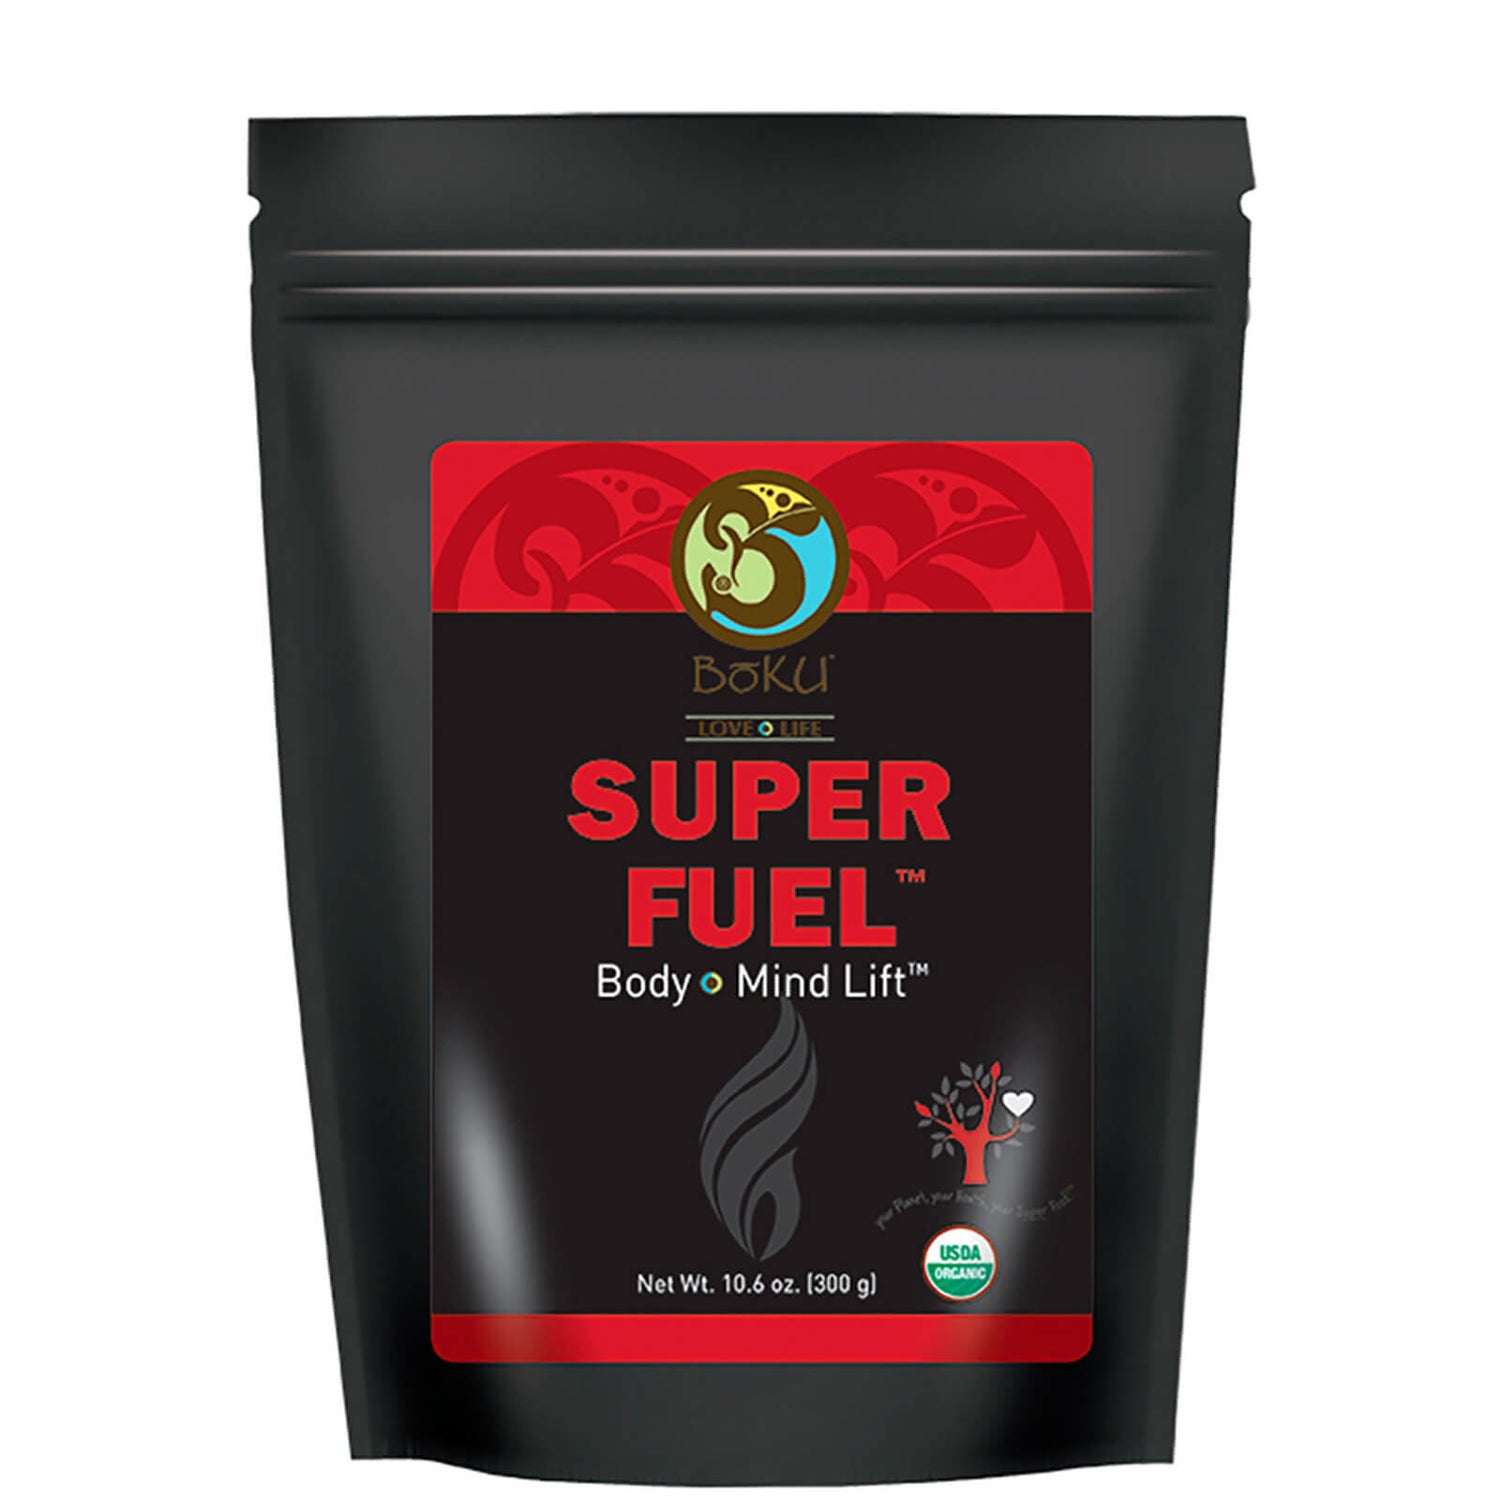 Boku Super Fuel